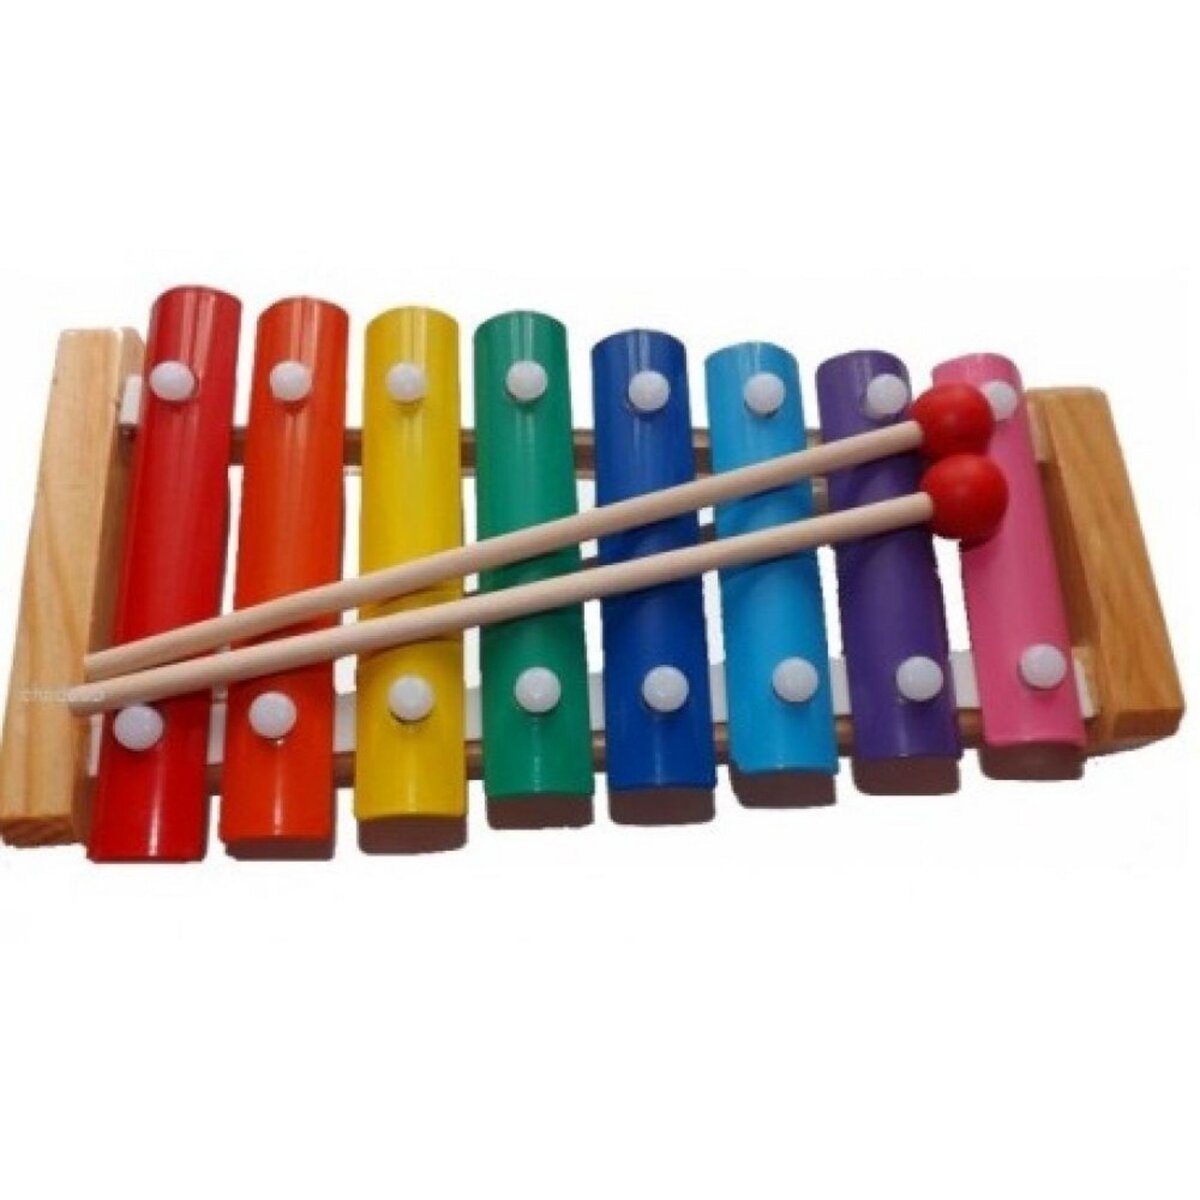 Xylophone Bebe Instrument de Musique Enfant 1 an Plus en Bois Jouet